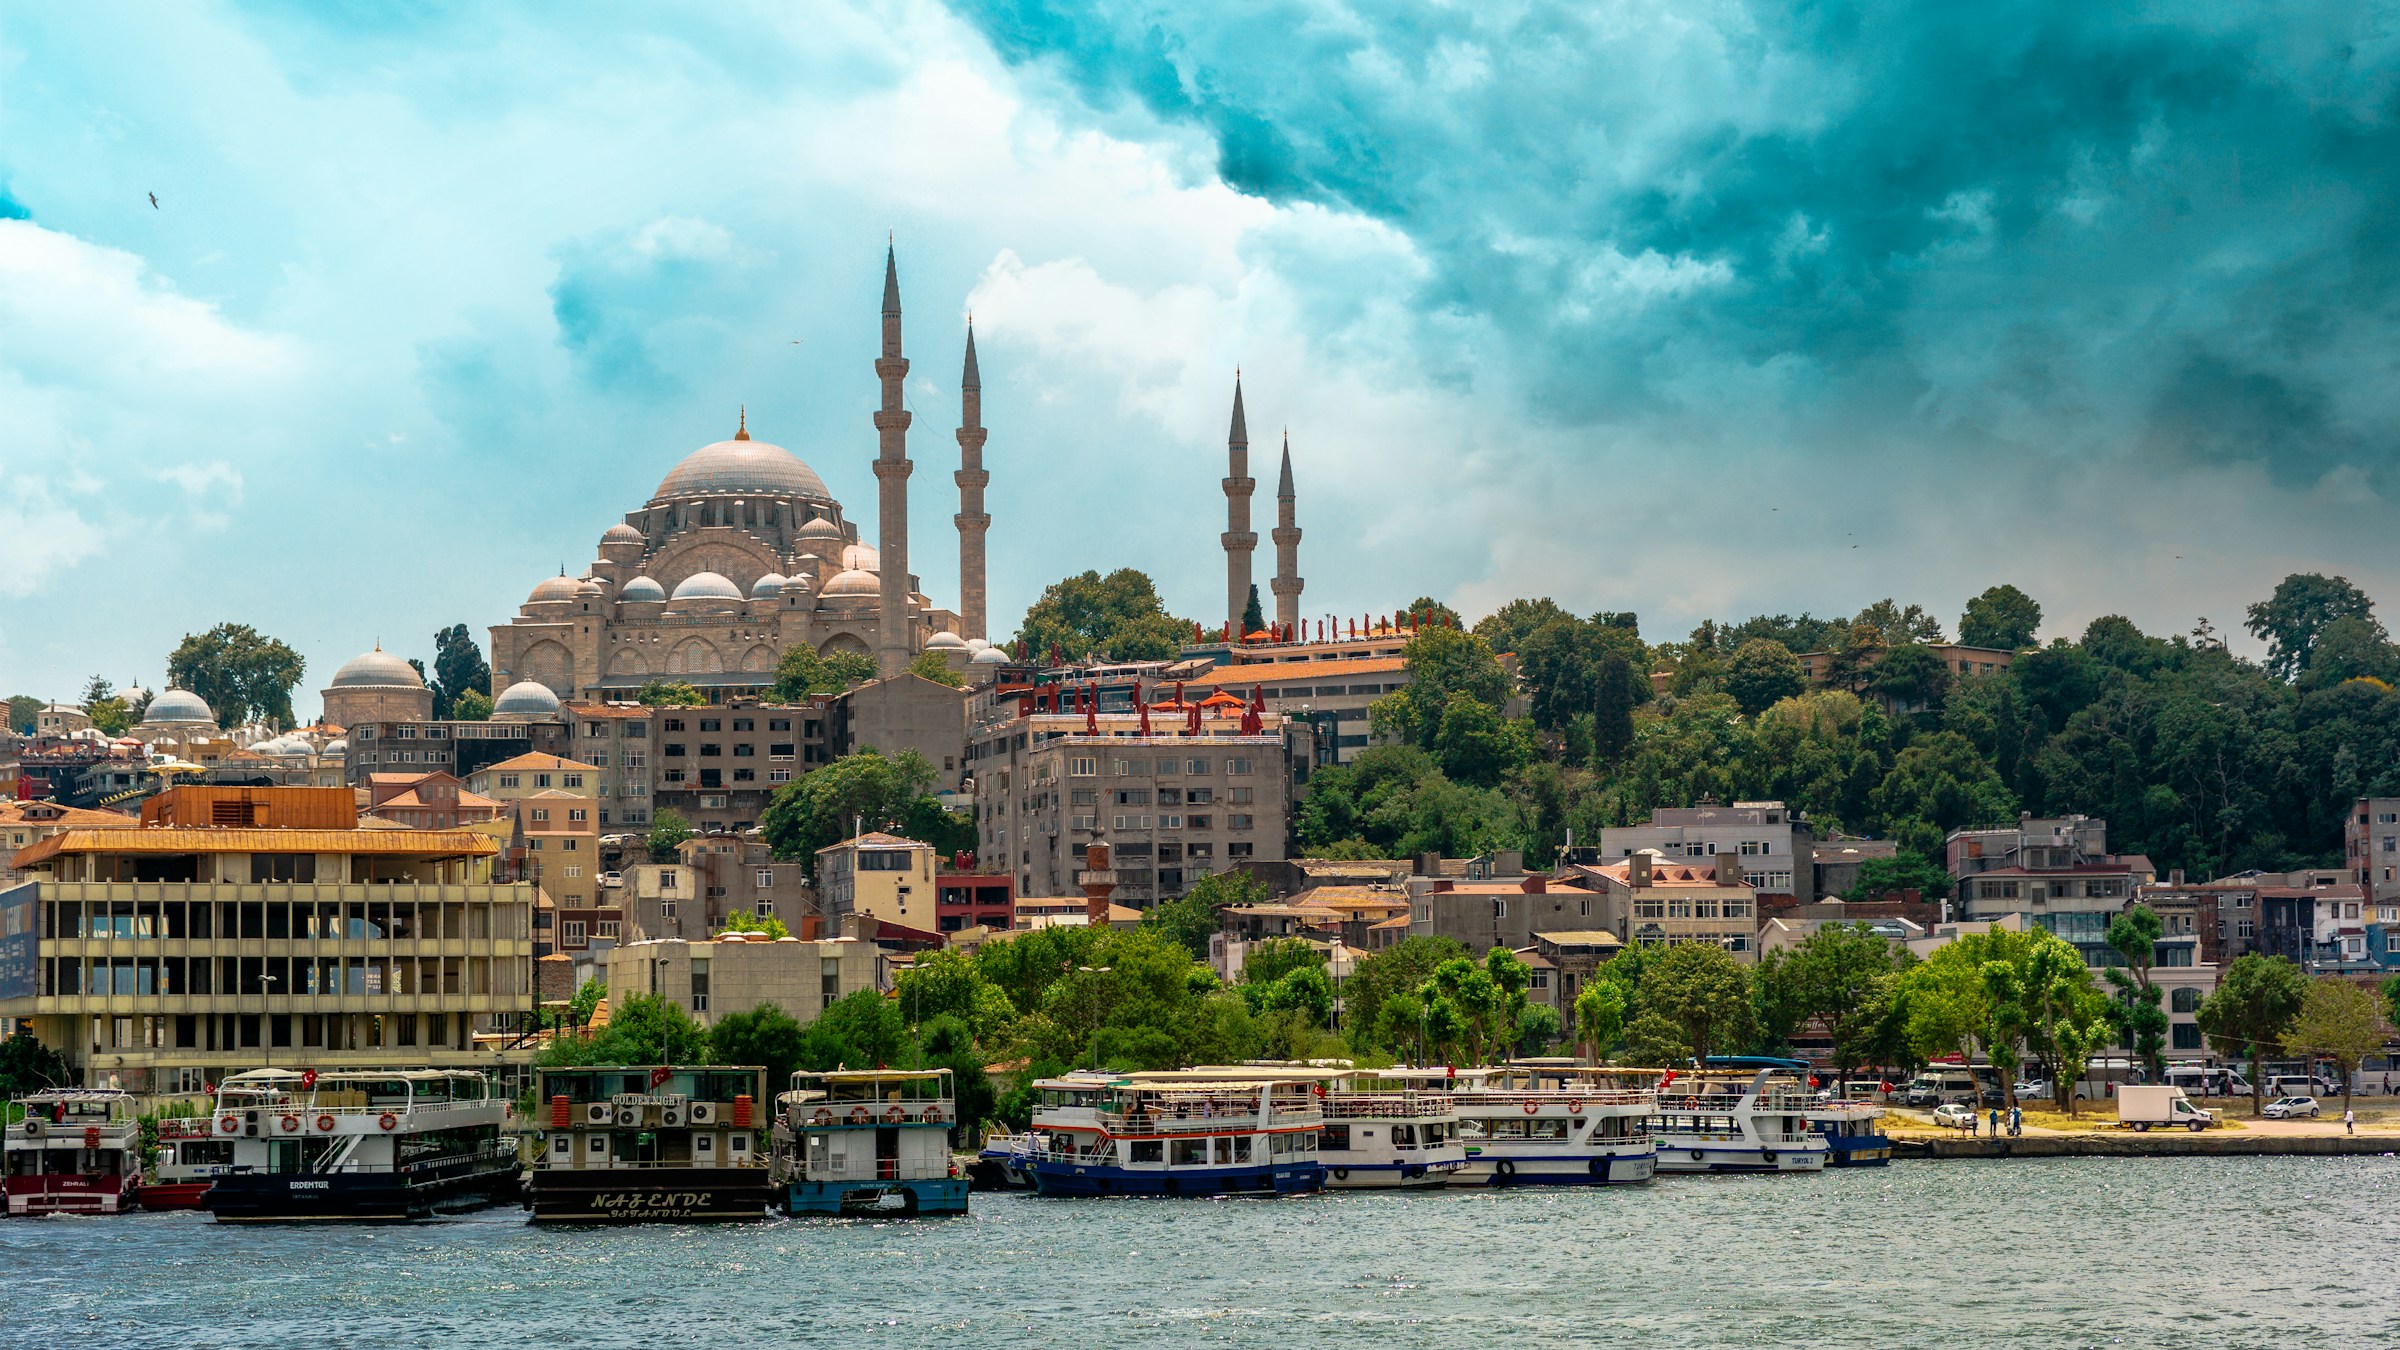 Panoramautsikt över den historiska Suleymaniye-moskén i Istanbul, med båtar förankrade längs kajen och dramatisk himmel ovanför.